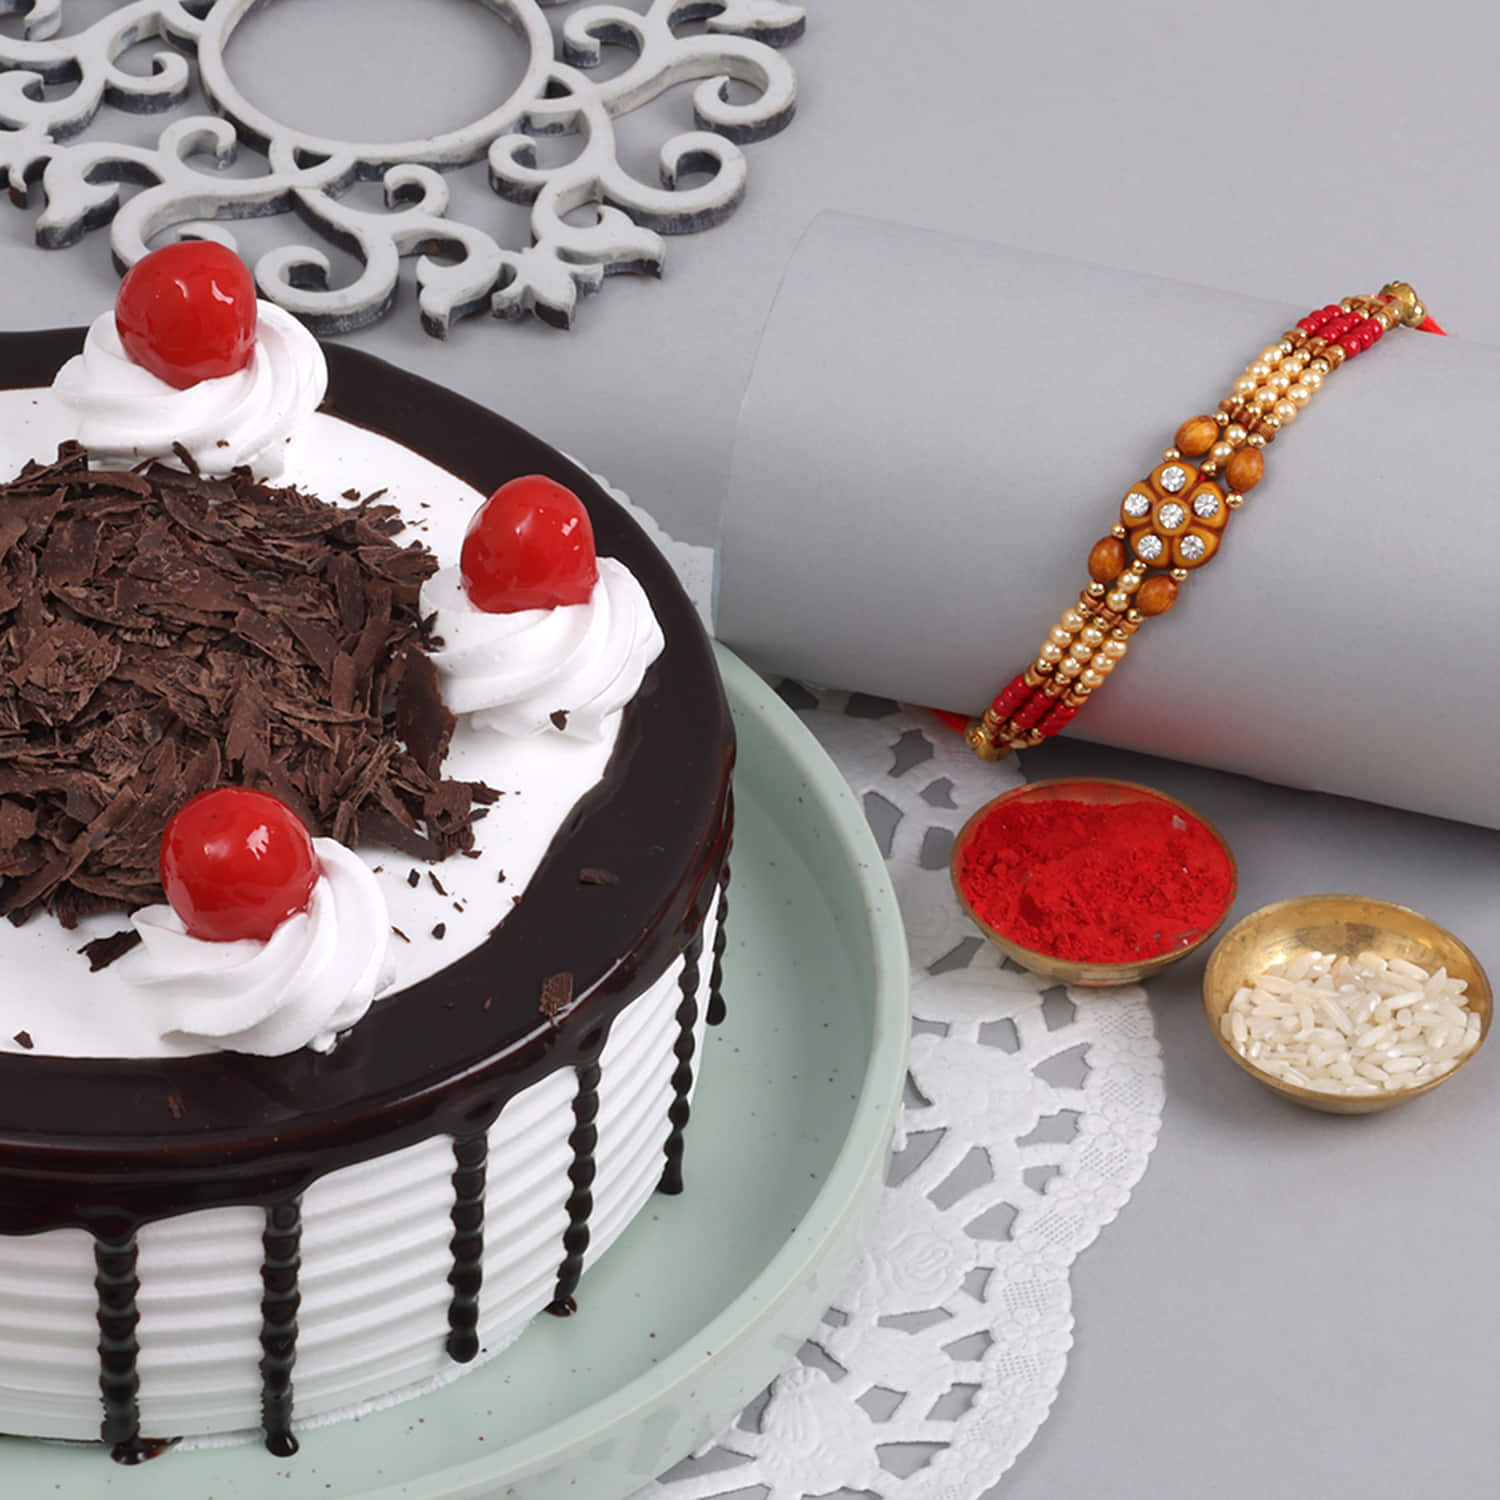 Buy/Send Heart Shape Black Forest Cake Half kg Online- Winni | Winni.in